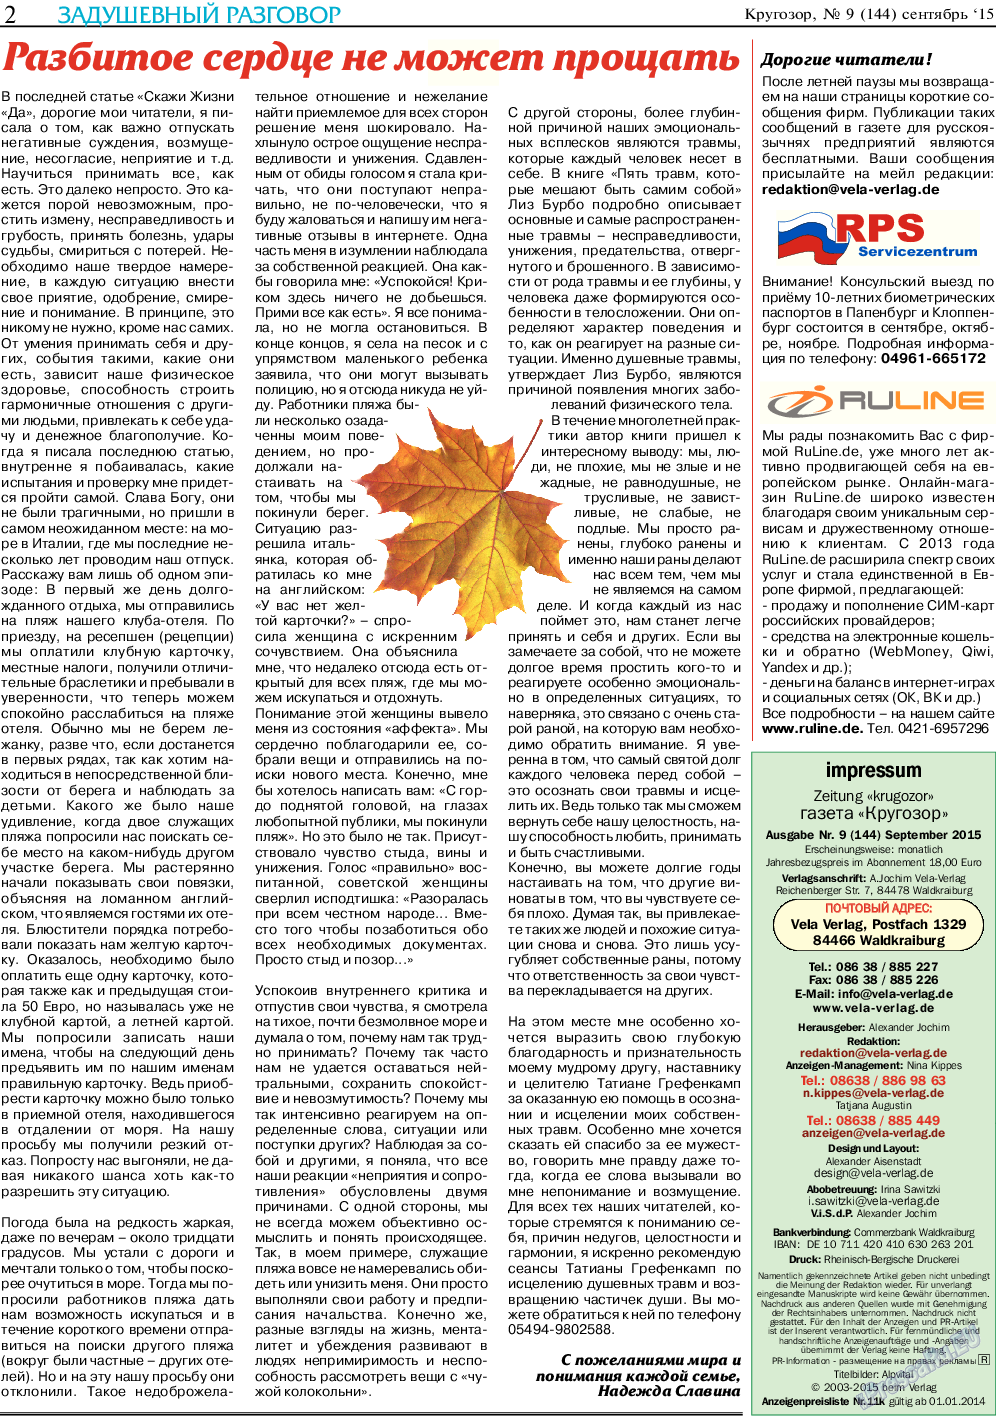 Кругозор, газета. 2015 №9 стр.2